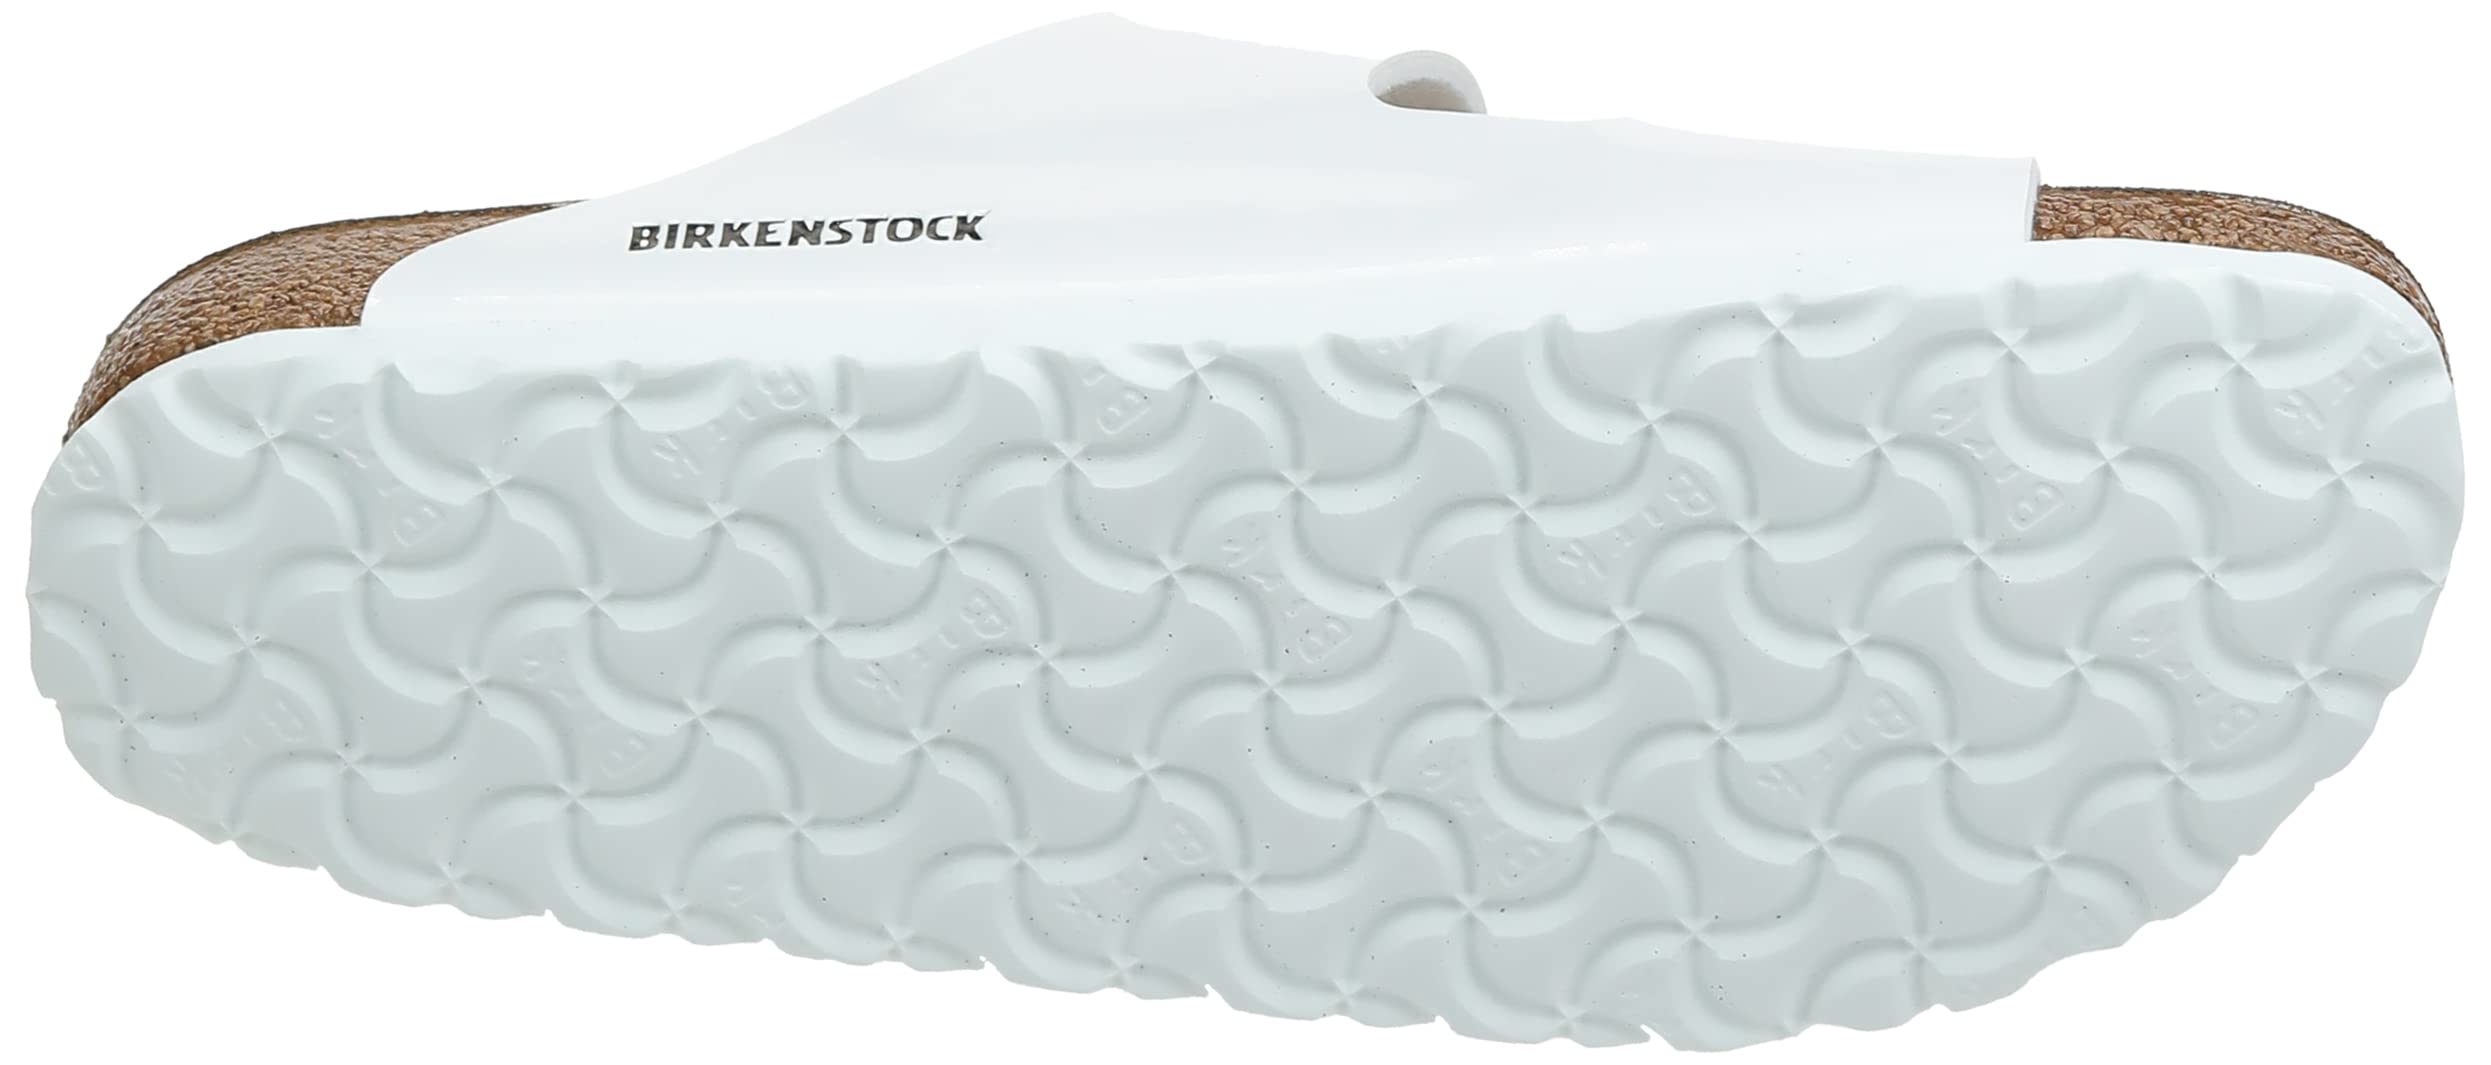 Birkenstock Unisex-Adult Sandals